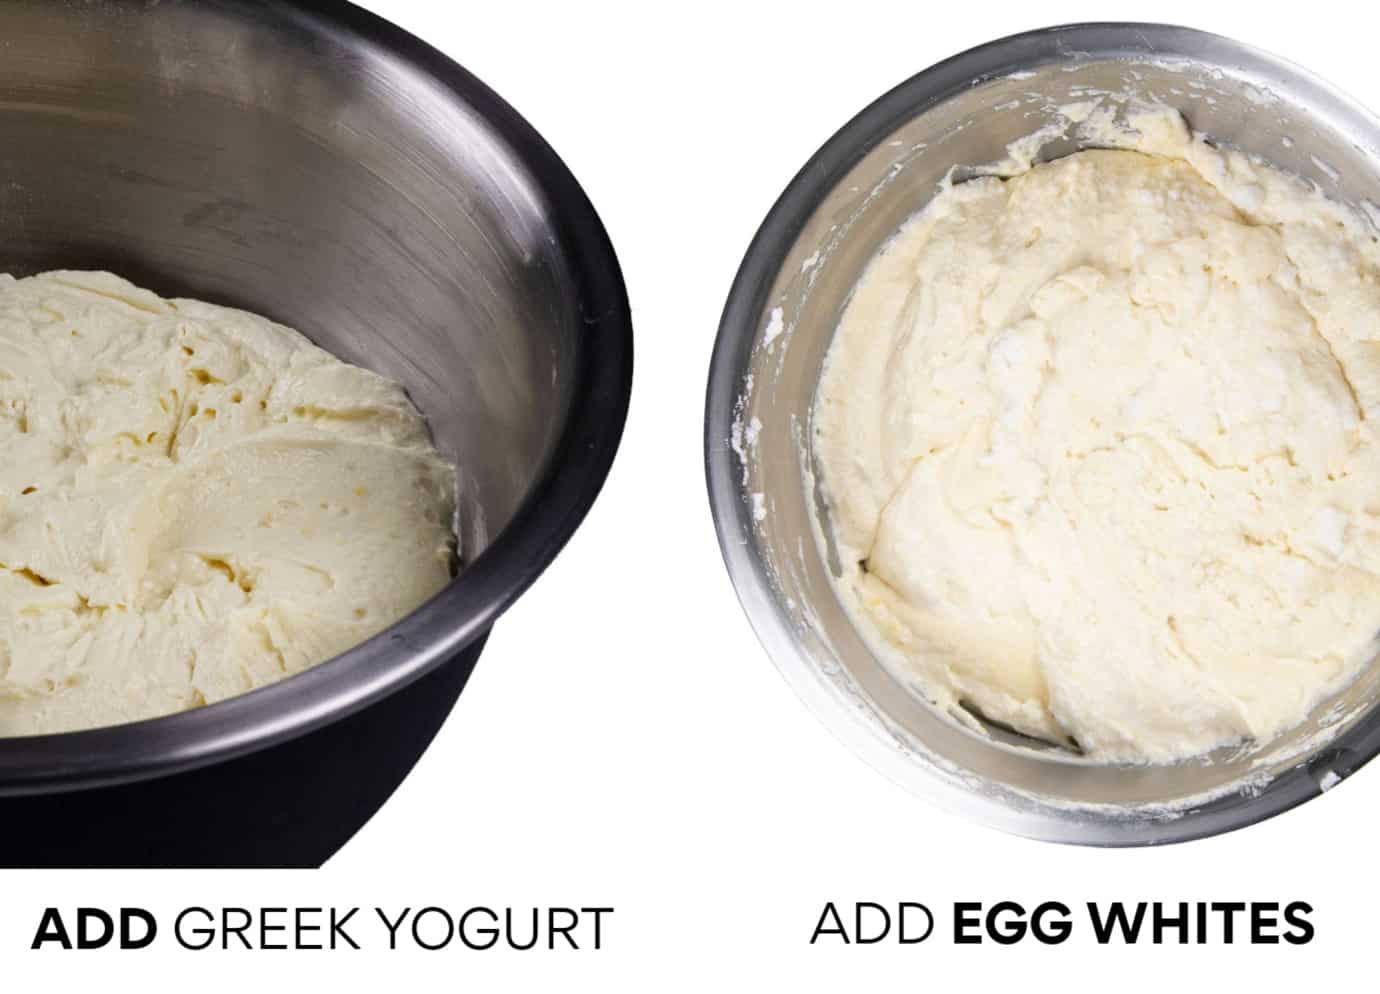 Left: Add Greek Yogurt - Right: Add Egg Whites